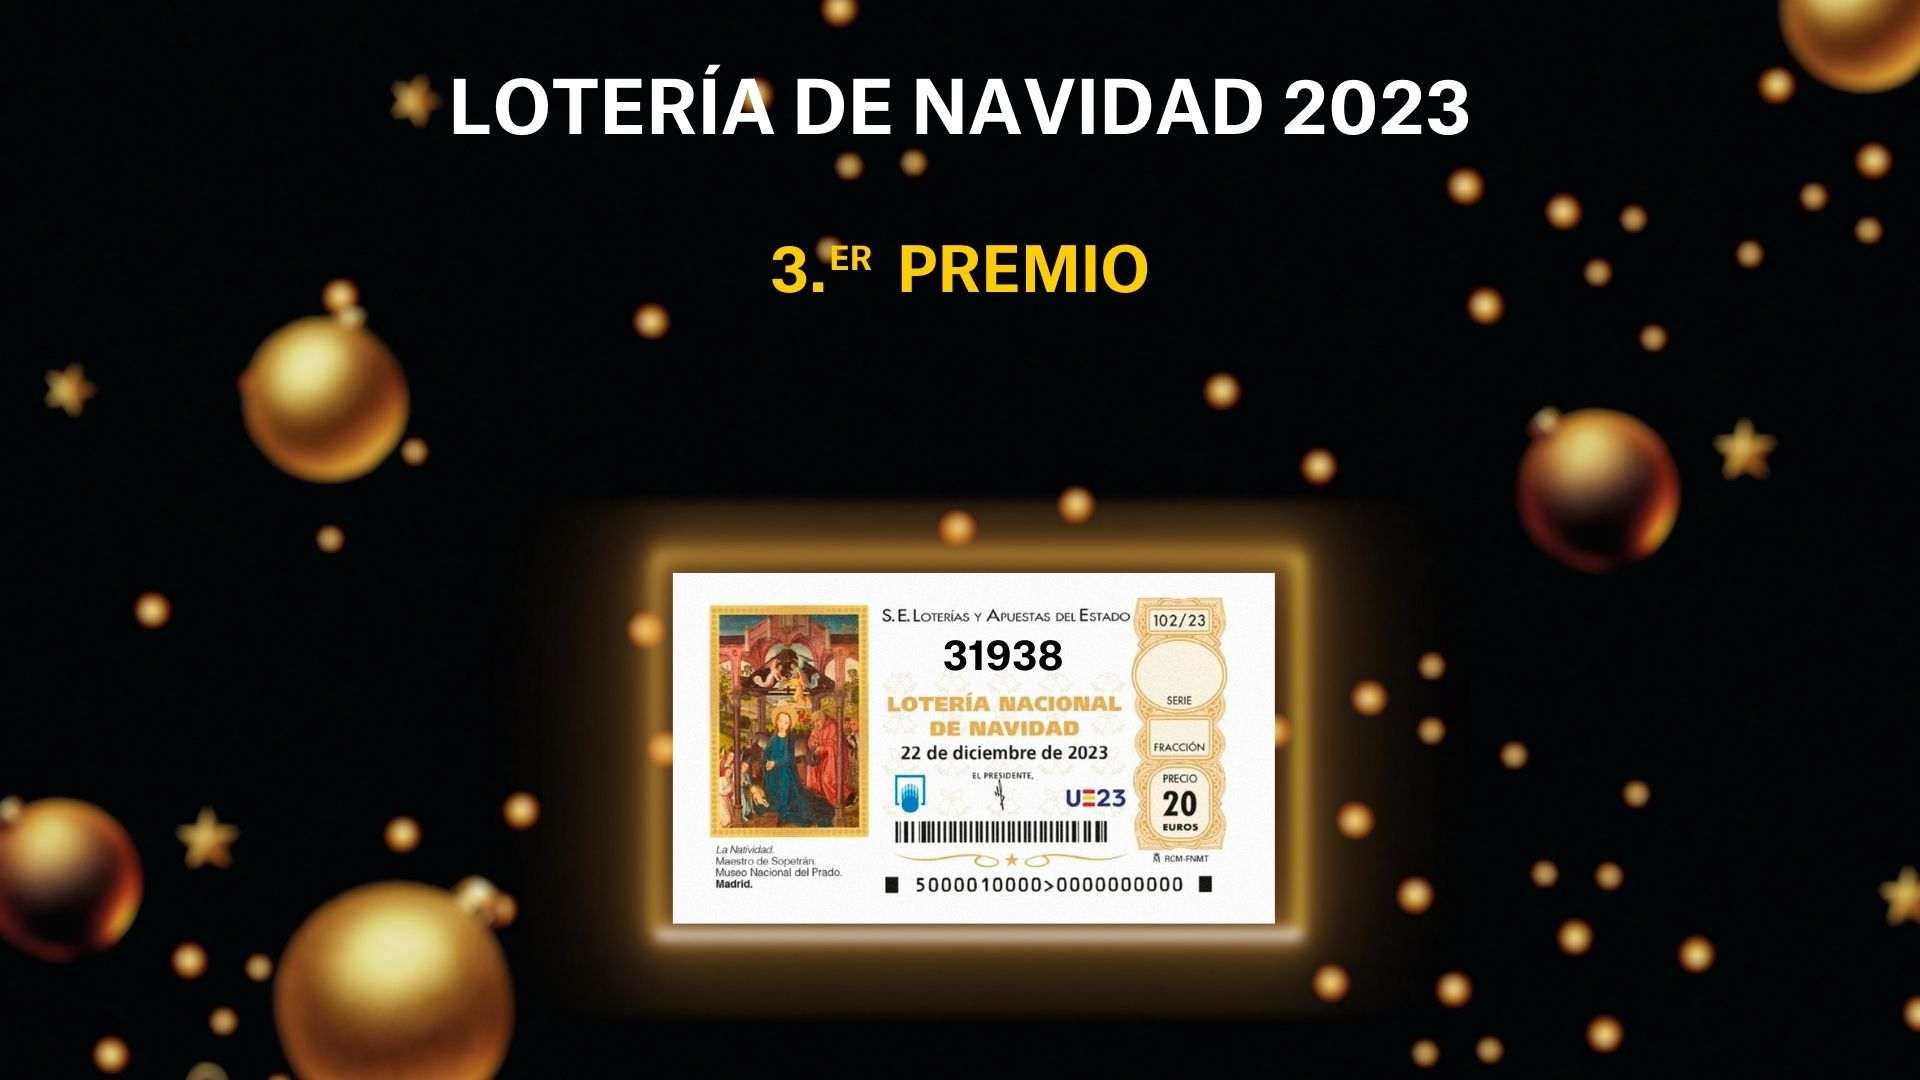 Tercer premi de la Loteria de Nadal 2023: 31938